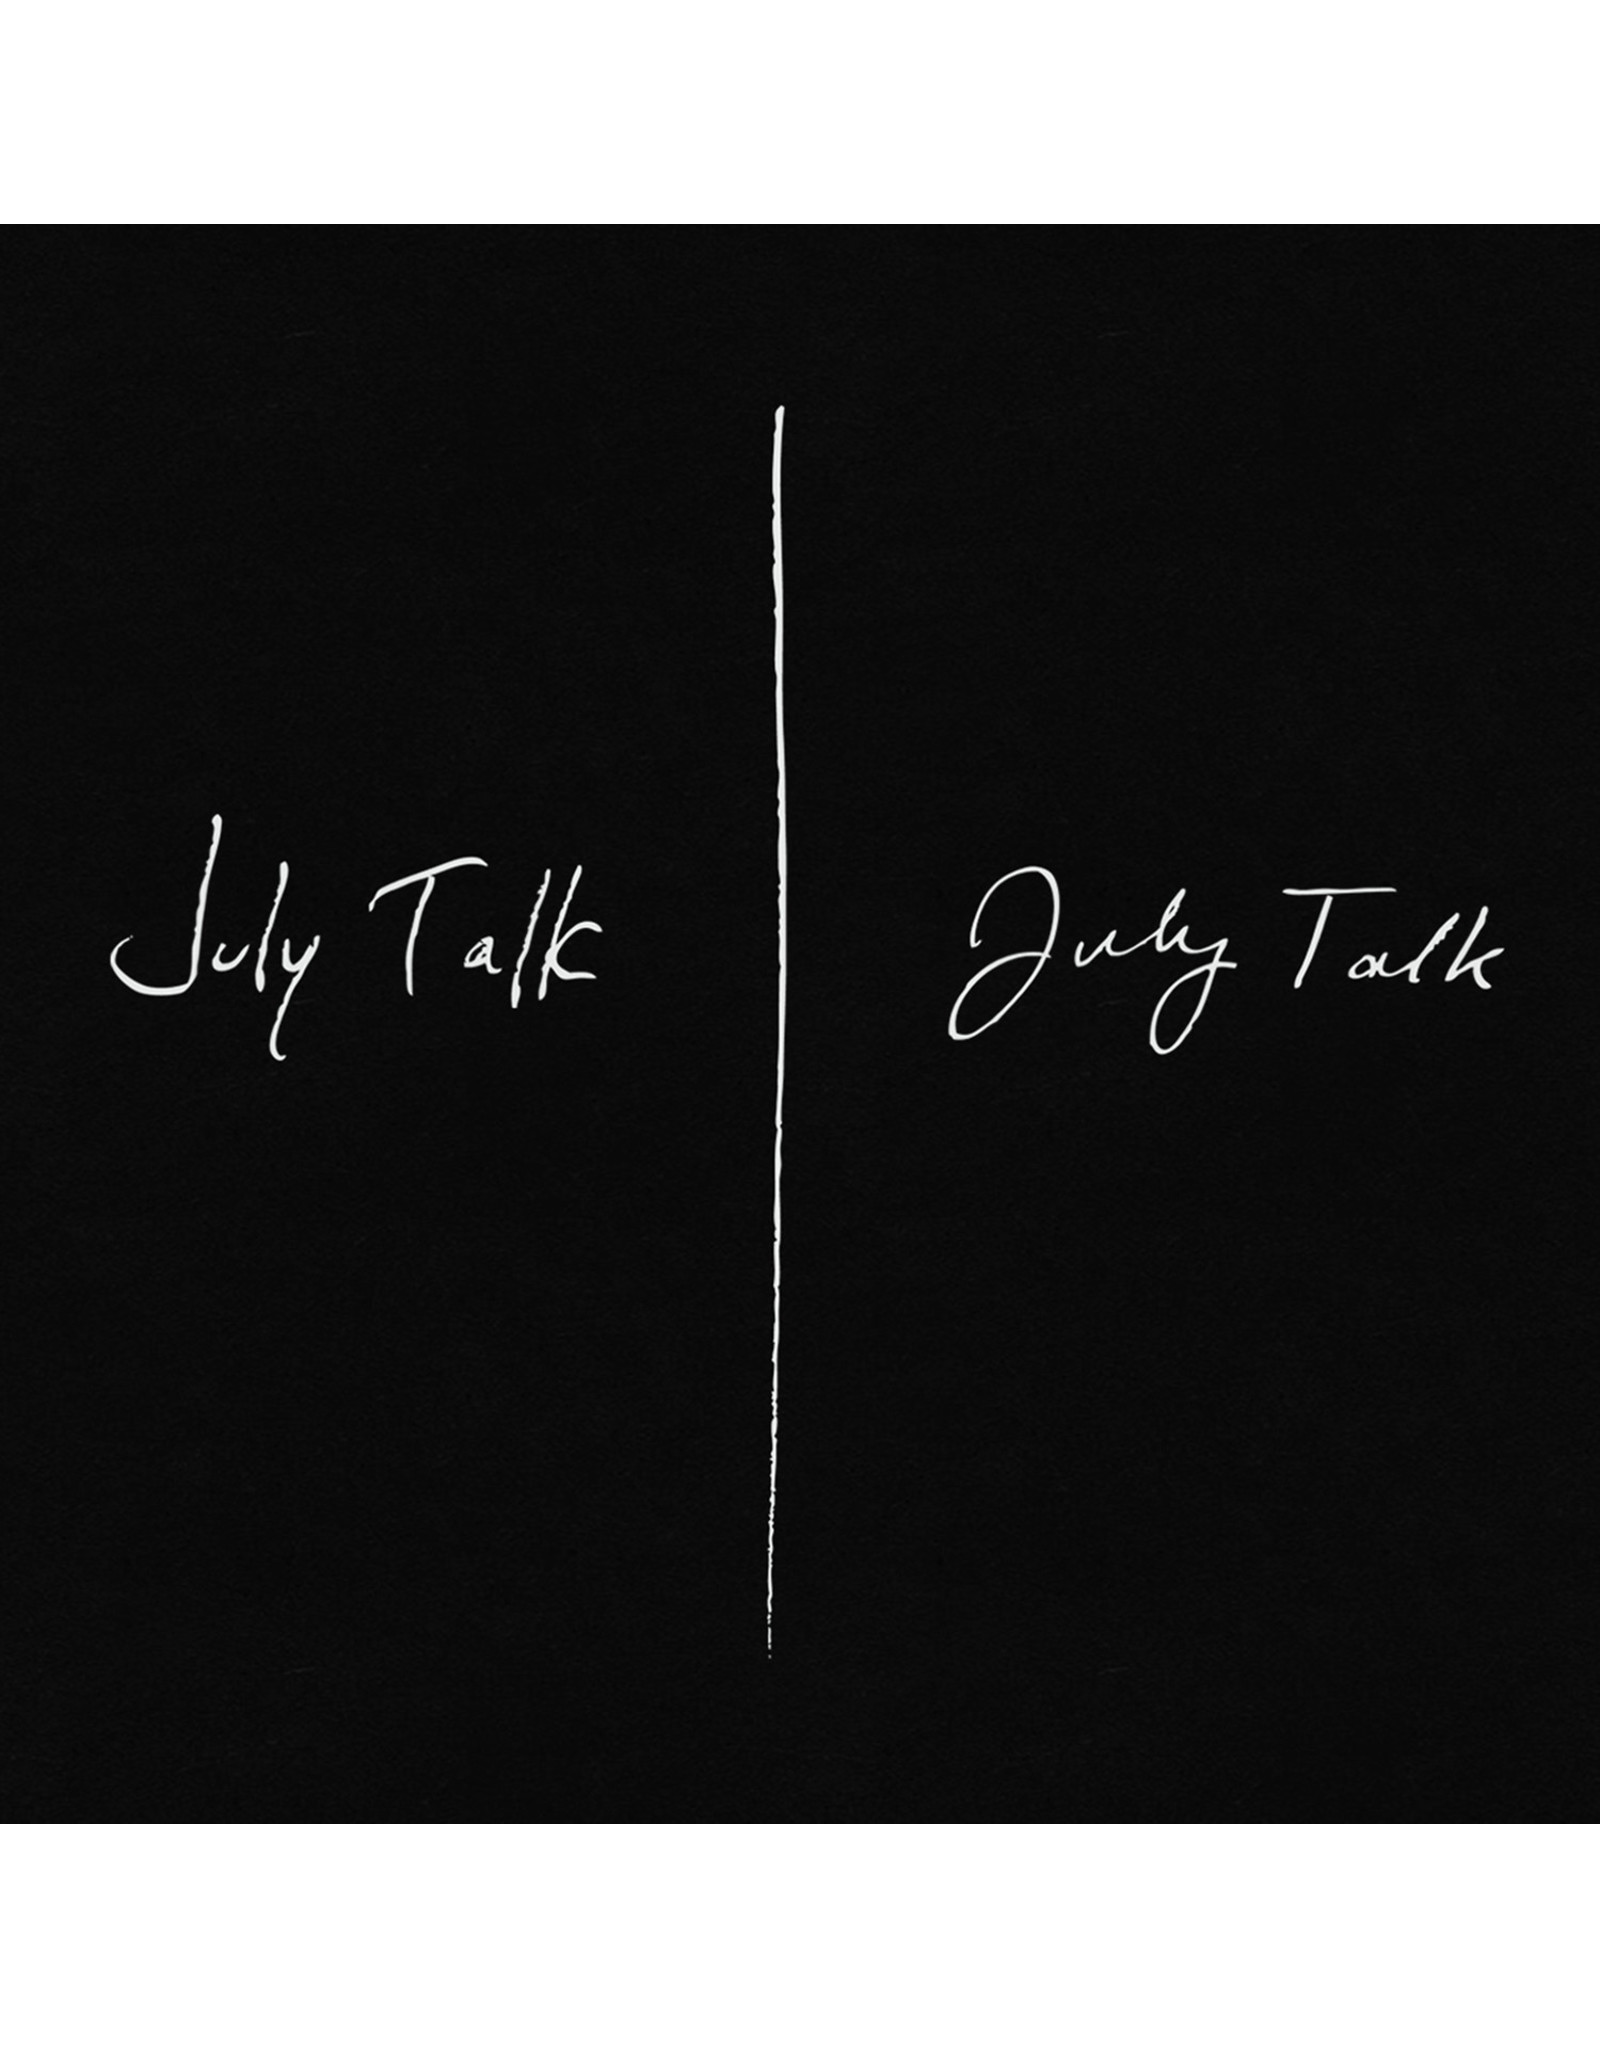 July Talk - July Talk